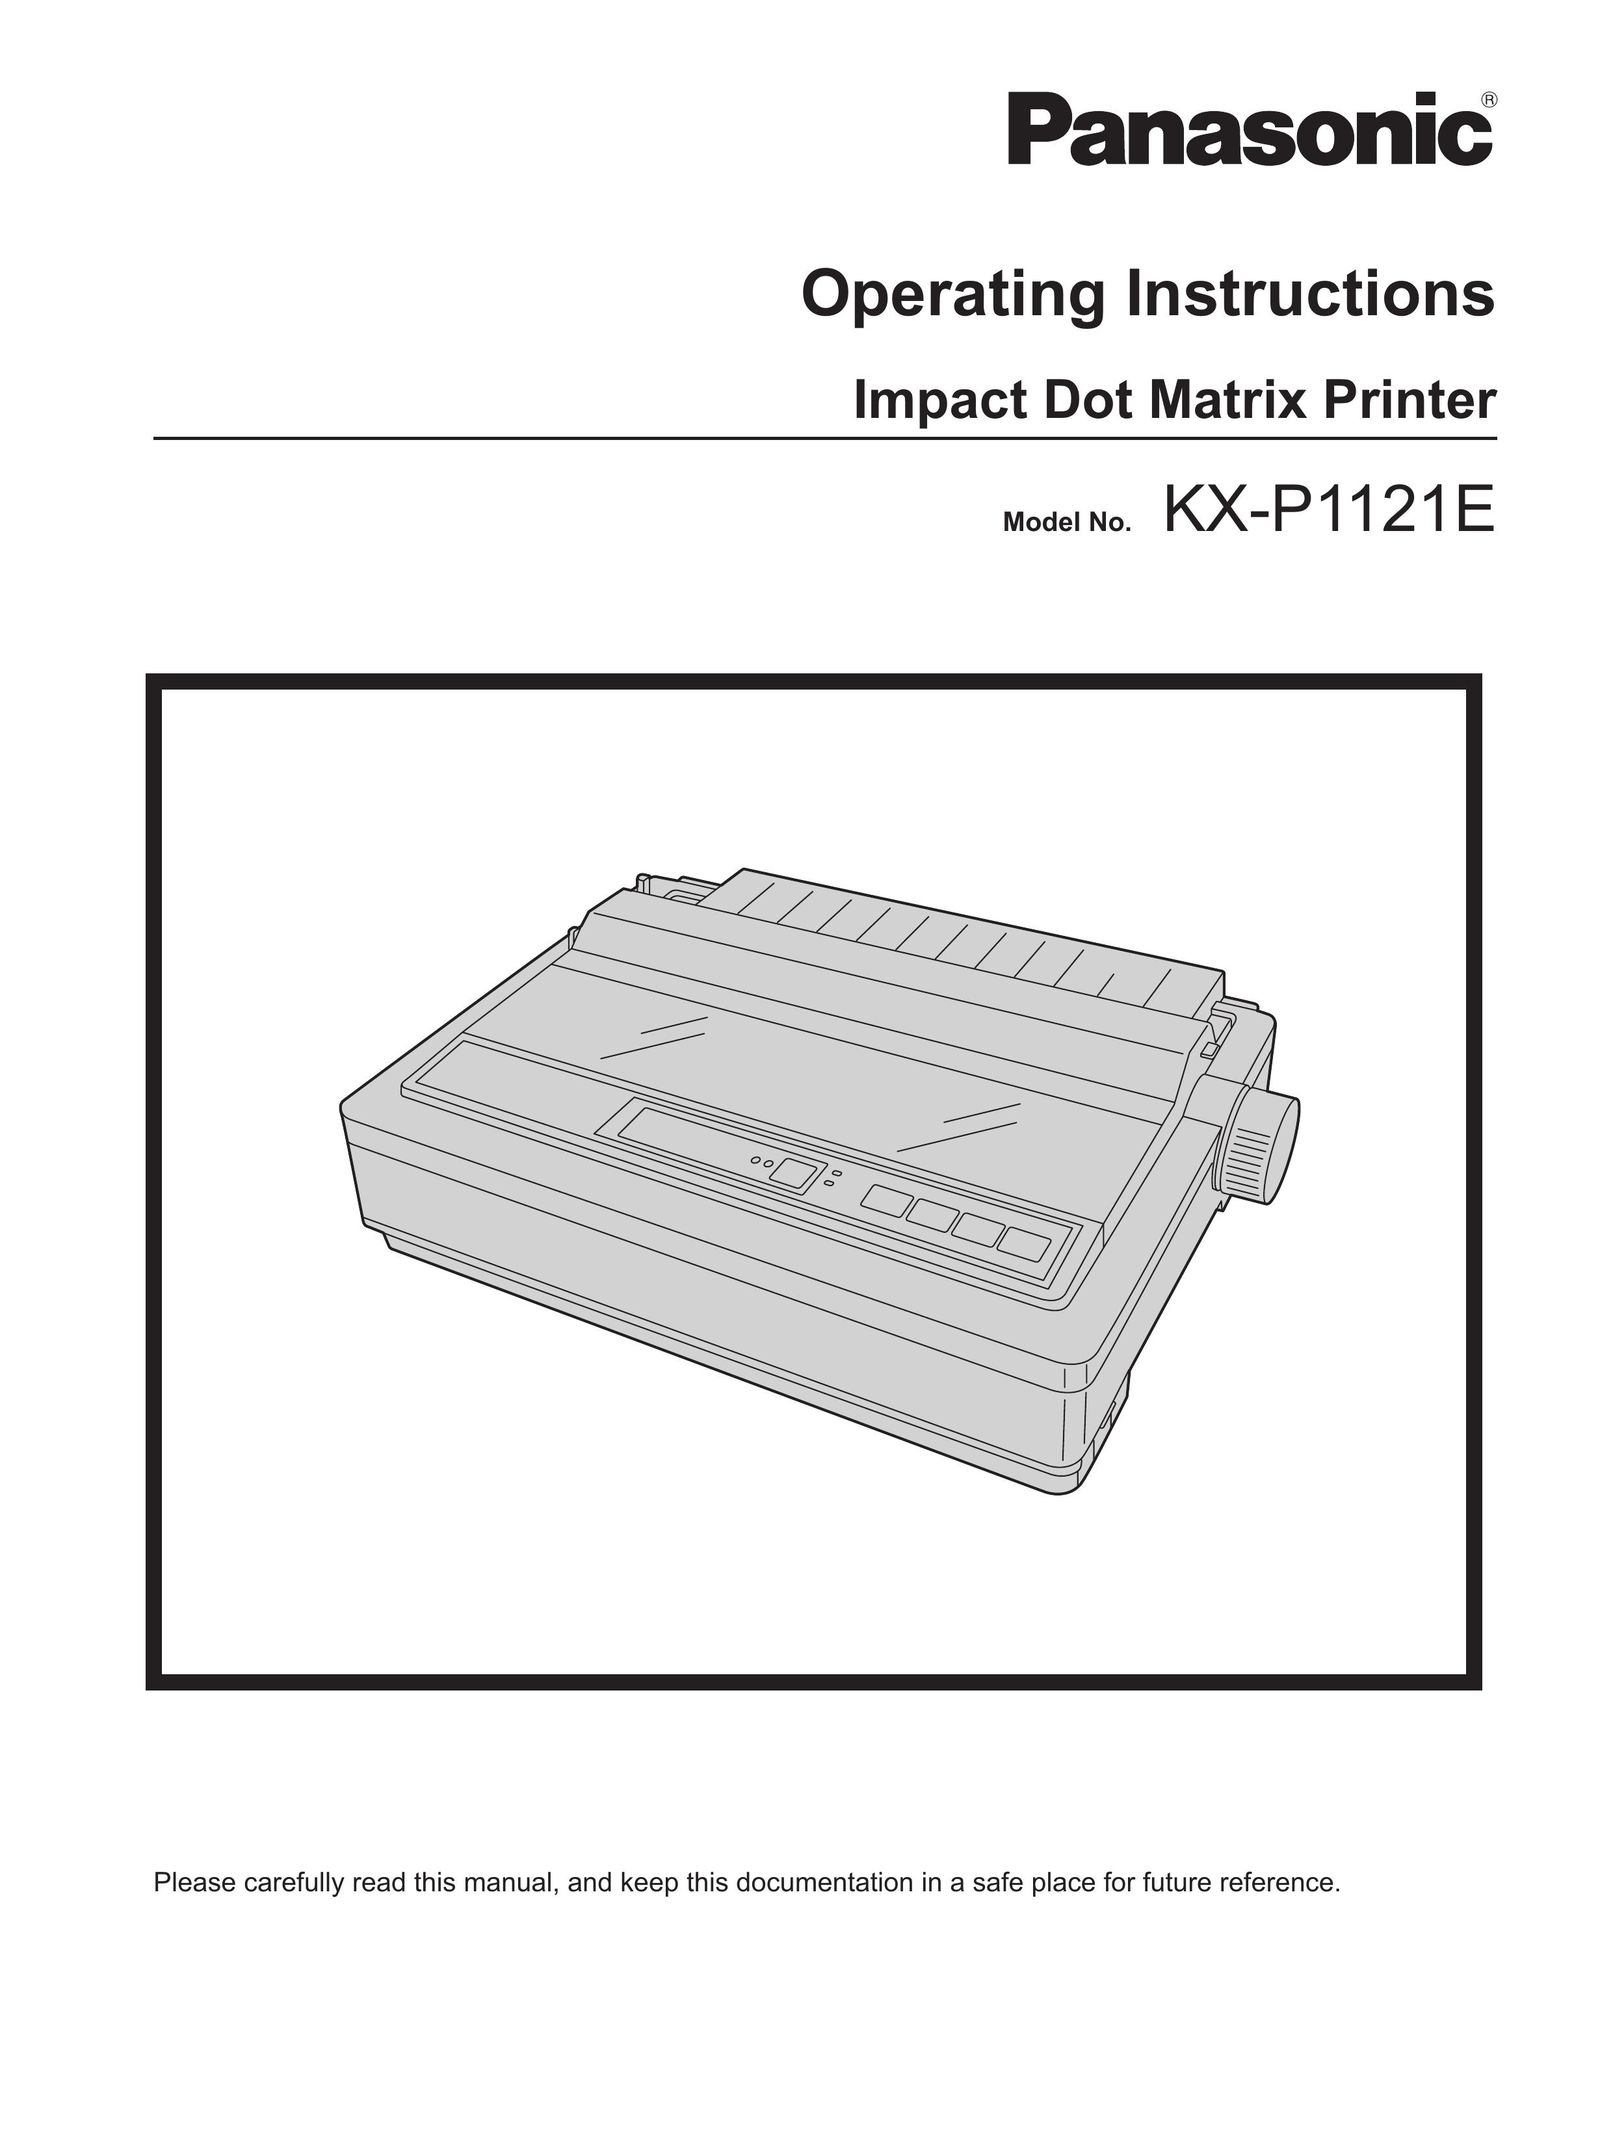 Panasonic KX-P1121E Printer User Manual